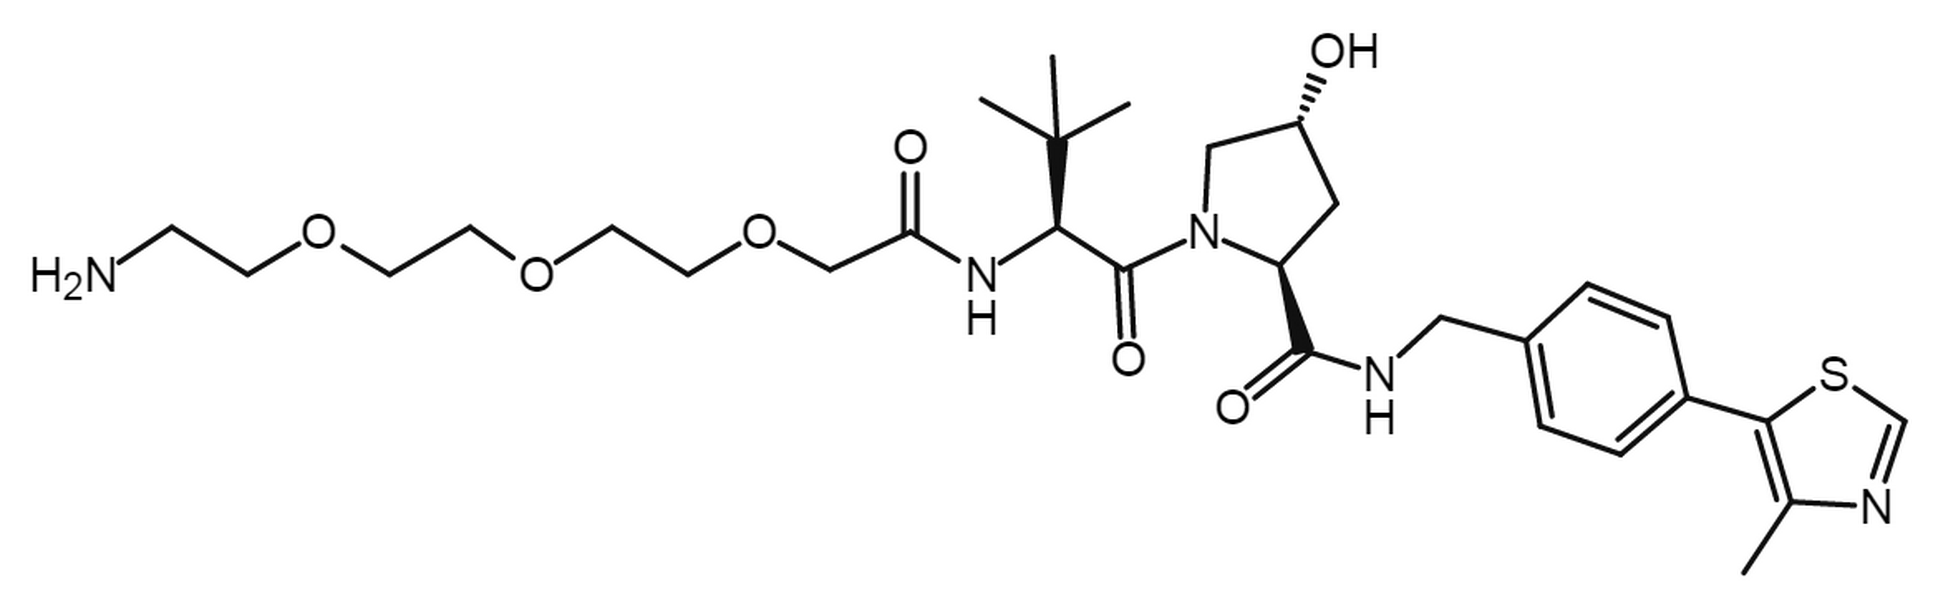 (S, R, S)-AHPC-PEG3-amine hydrochloride salt